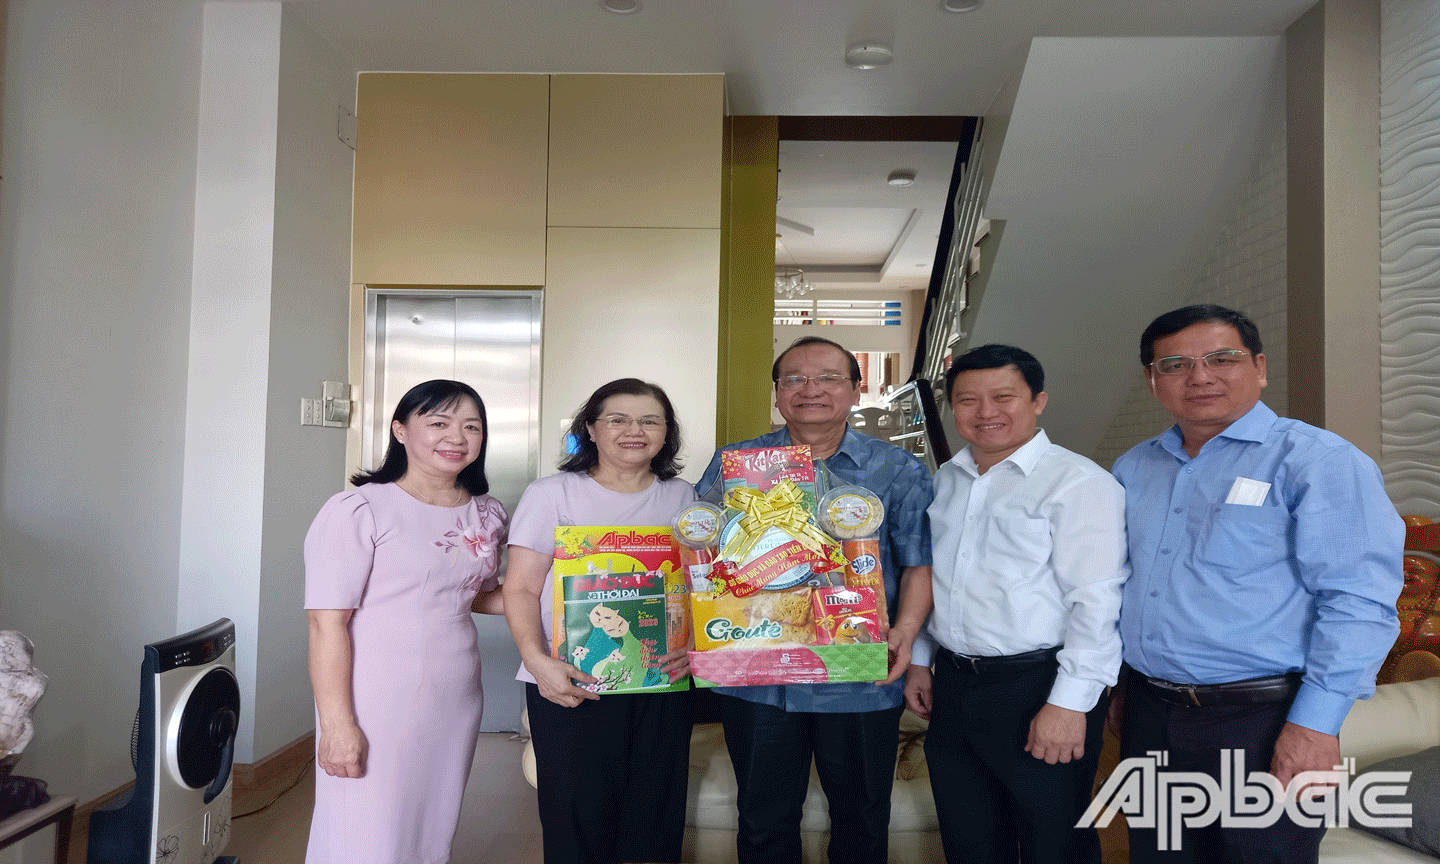 Đoàn đến thăm, chúc tết gia đình đồng chí Trần Thanh Đức, nguyên Phó Chủ tịch UBND tỉnh, nguyên Giám đốc Sở GD&ĐT tỉnh Tiền Giang.